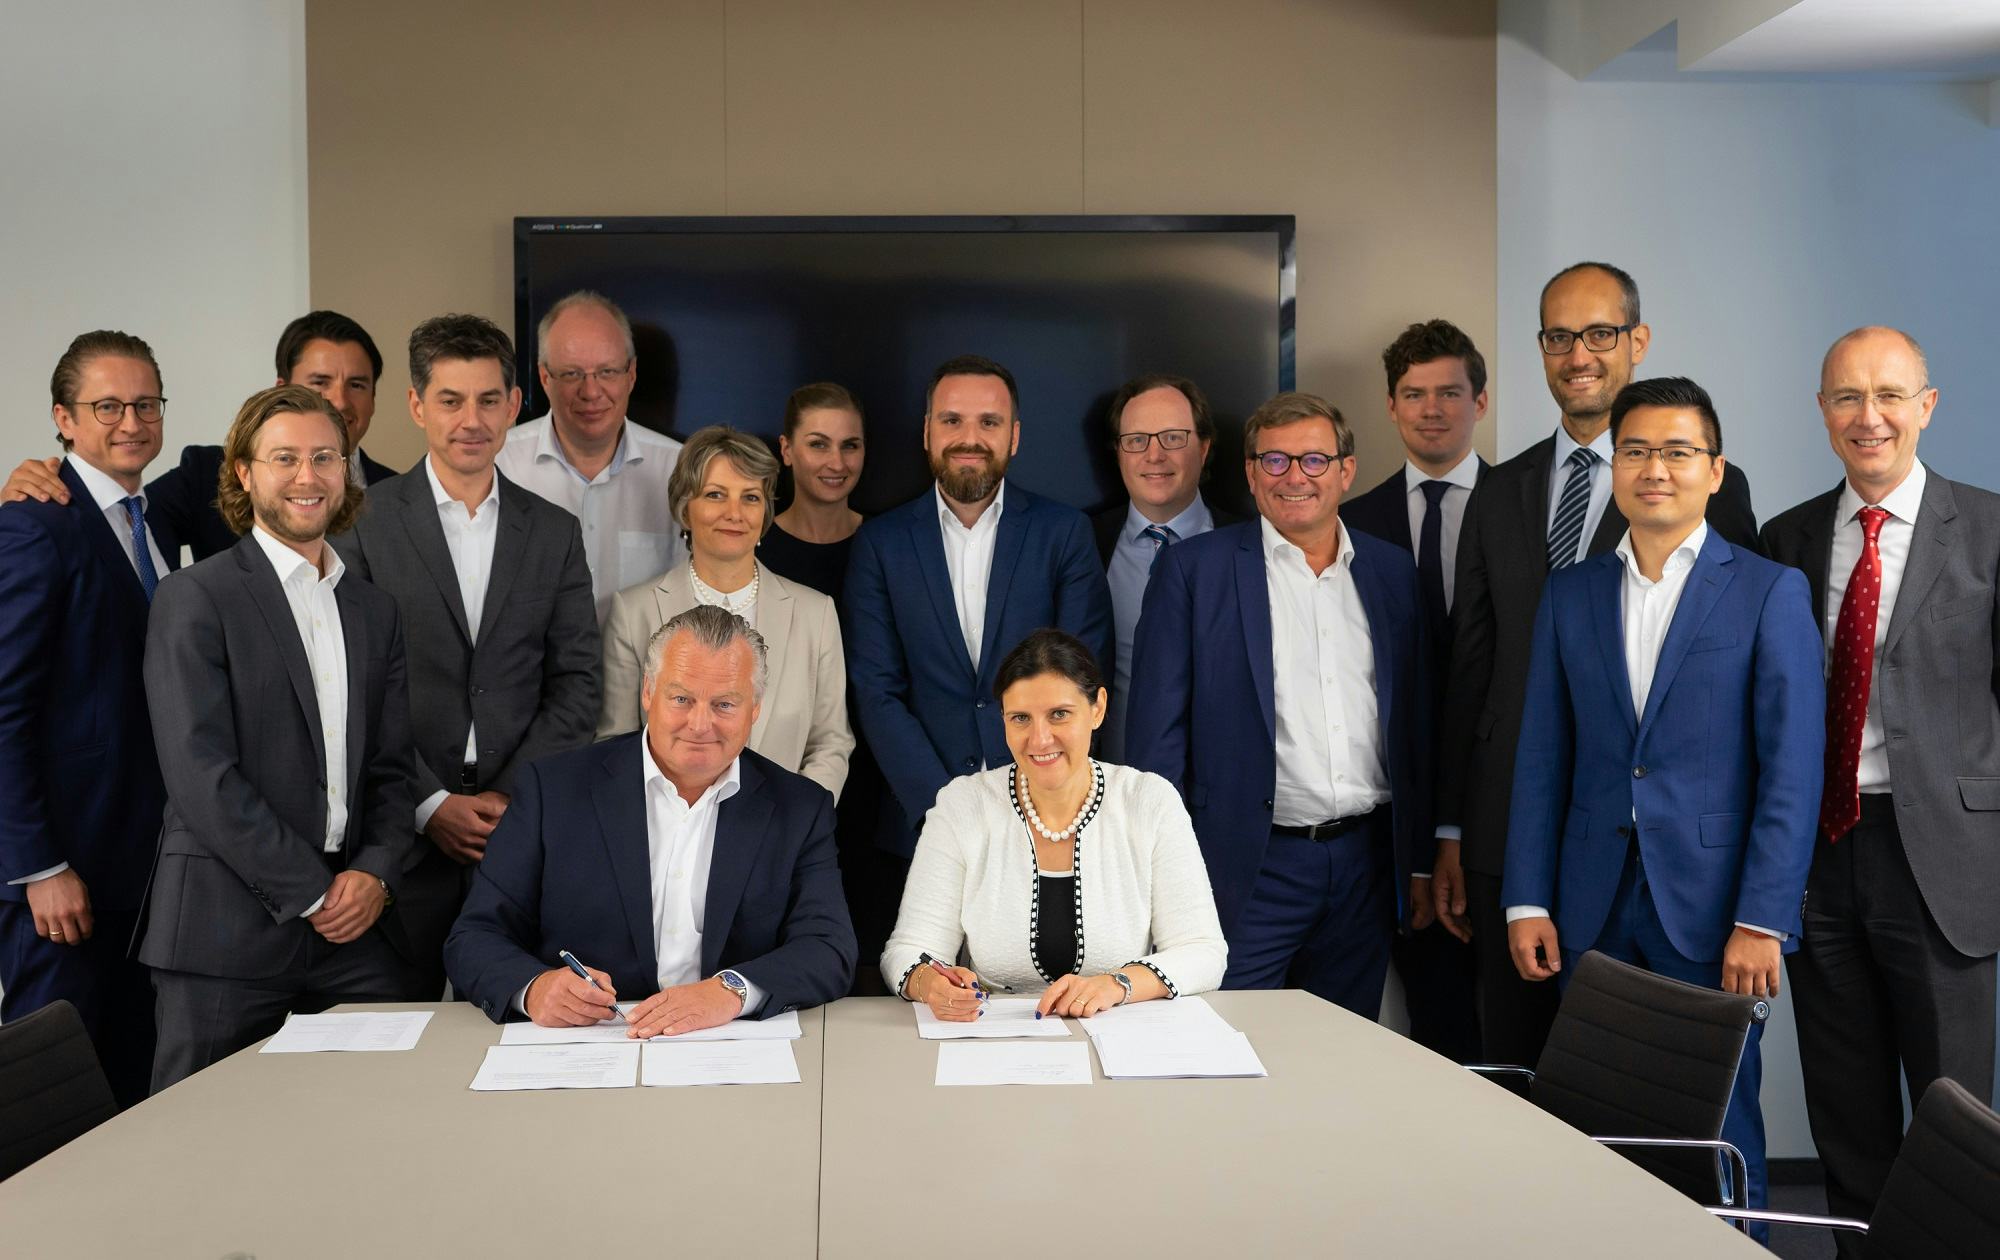 Directeur Menno van der Horst (MVGM) en cfo Maria Grigorova van JLL Emea ondertekenen de deal